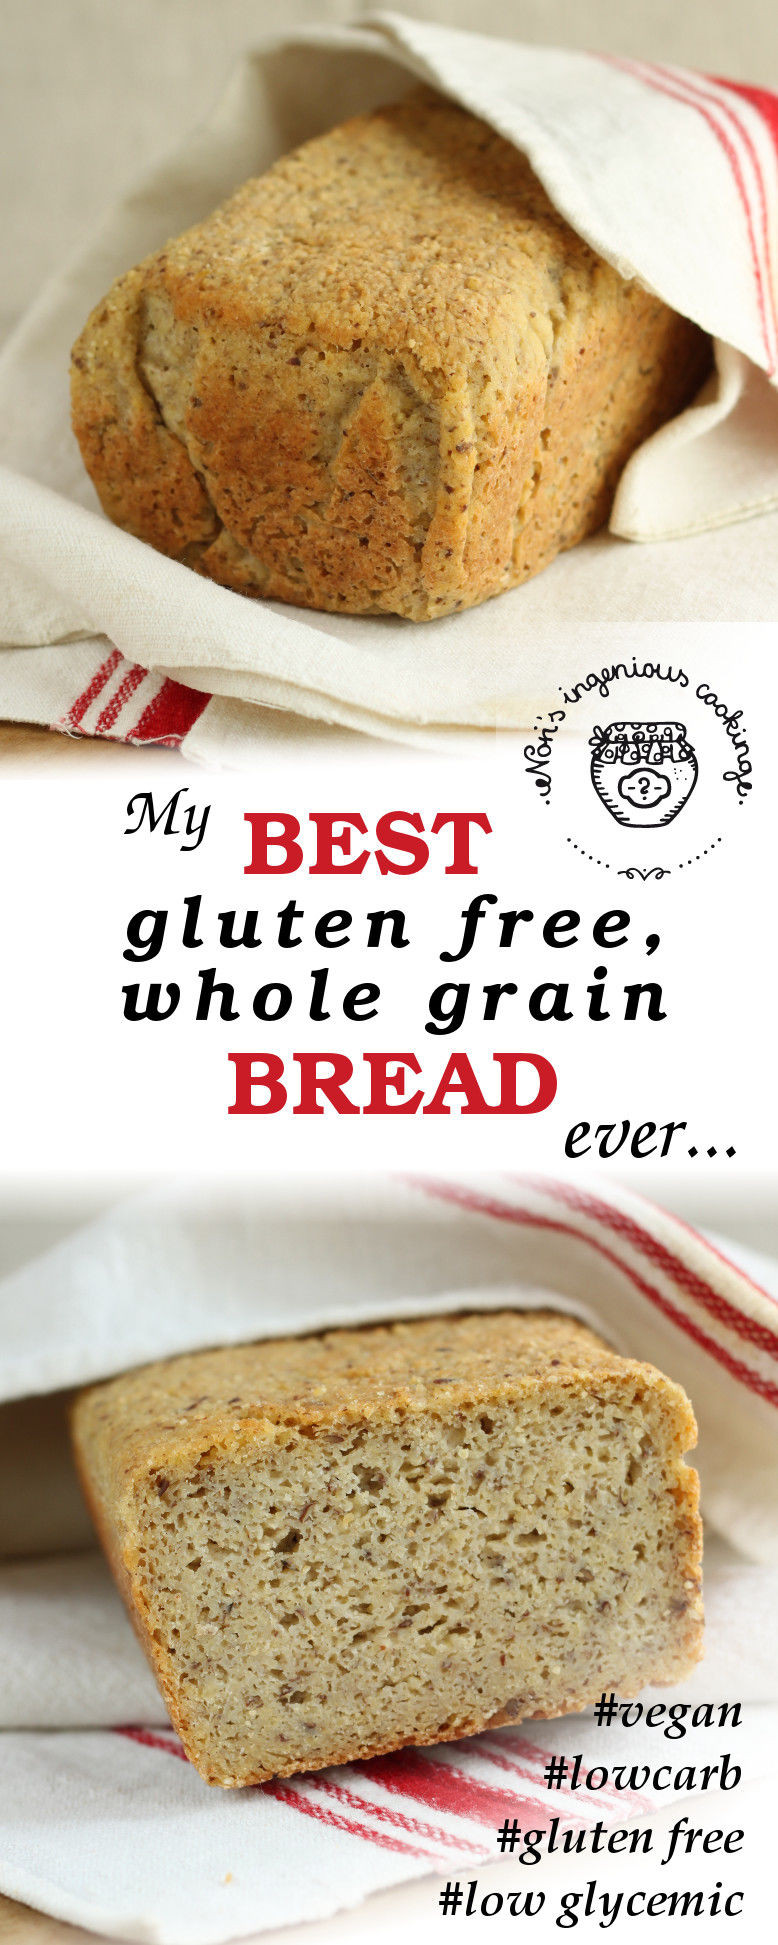 Good Grain Free Bread
 My best gluten free whole grain bread ever vegan